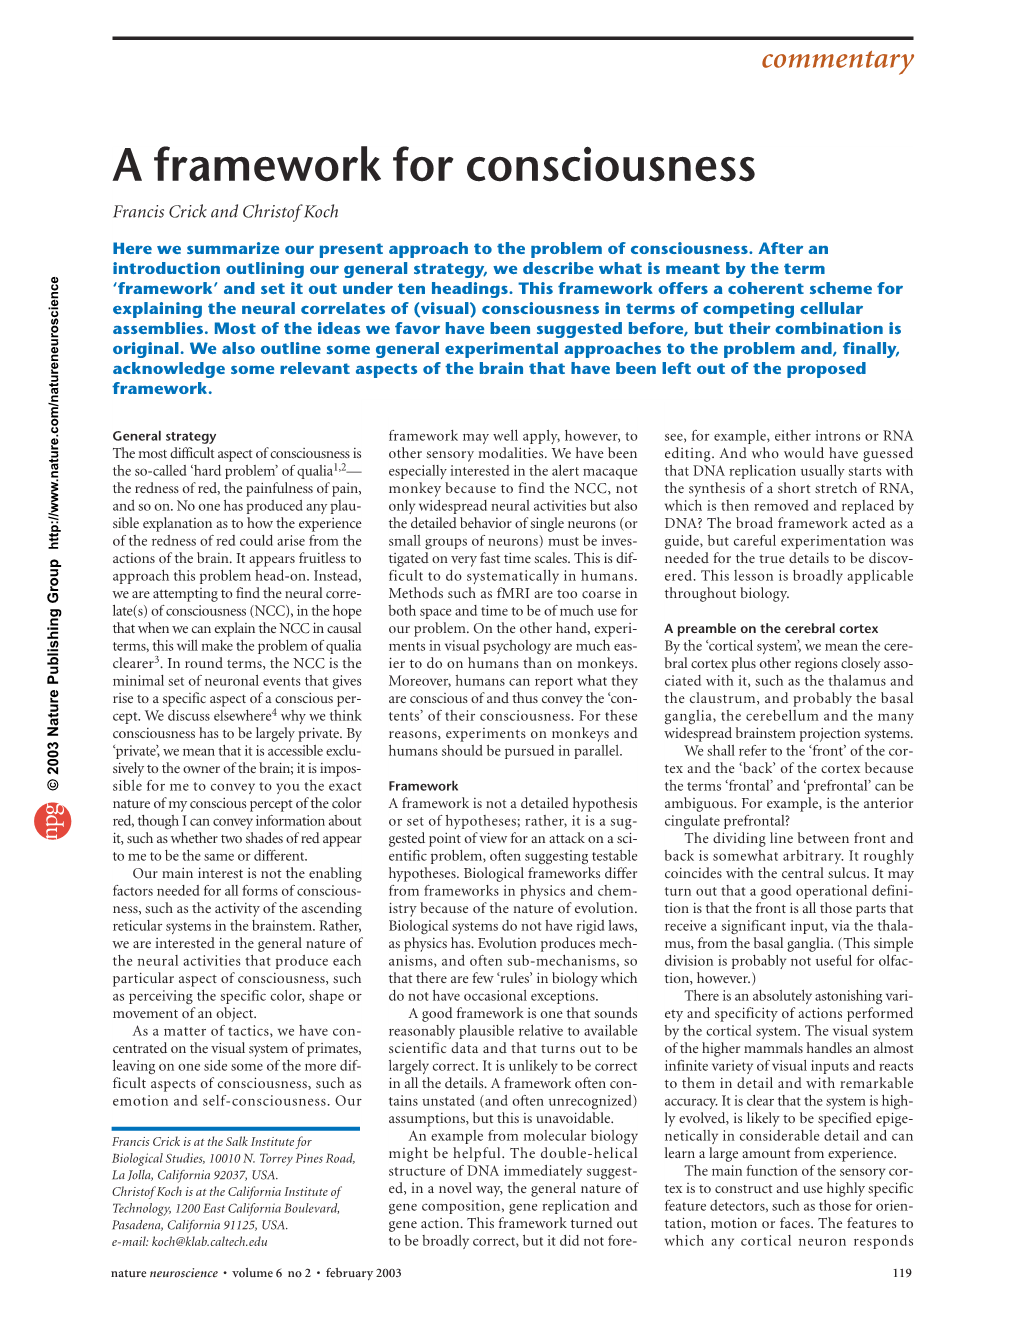 A Framework for Consciousness Francis Crick and Christof Koch